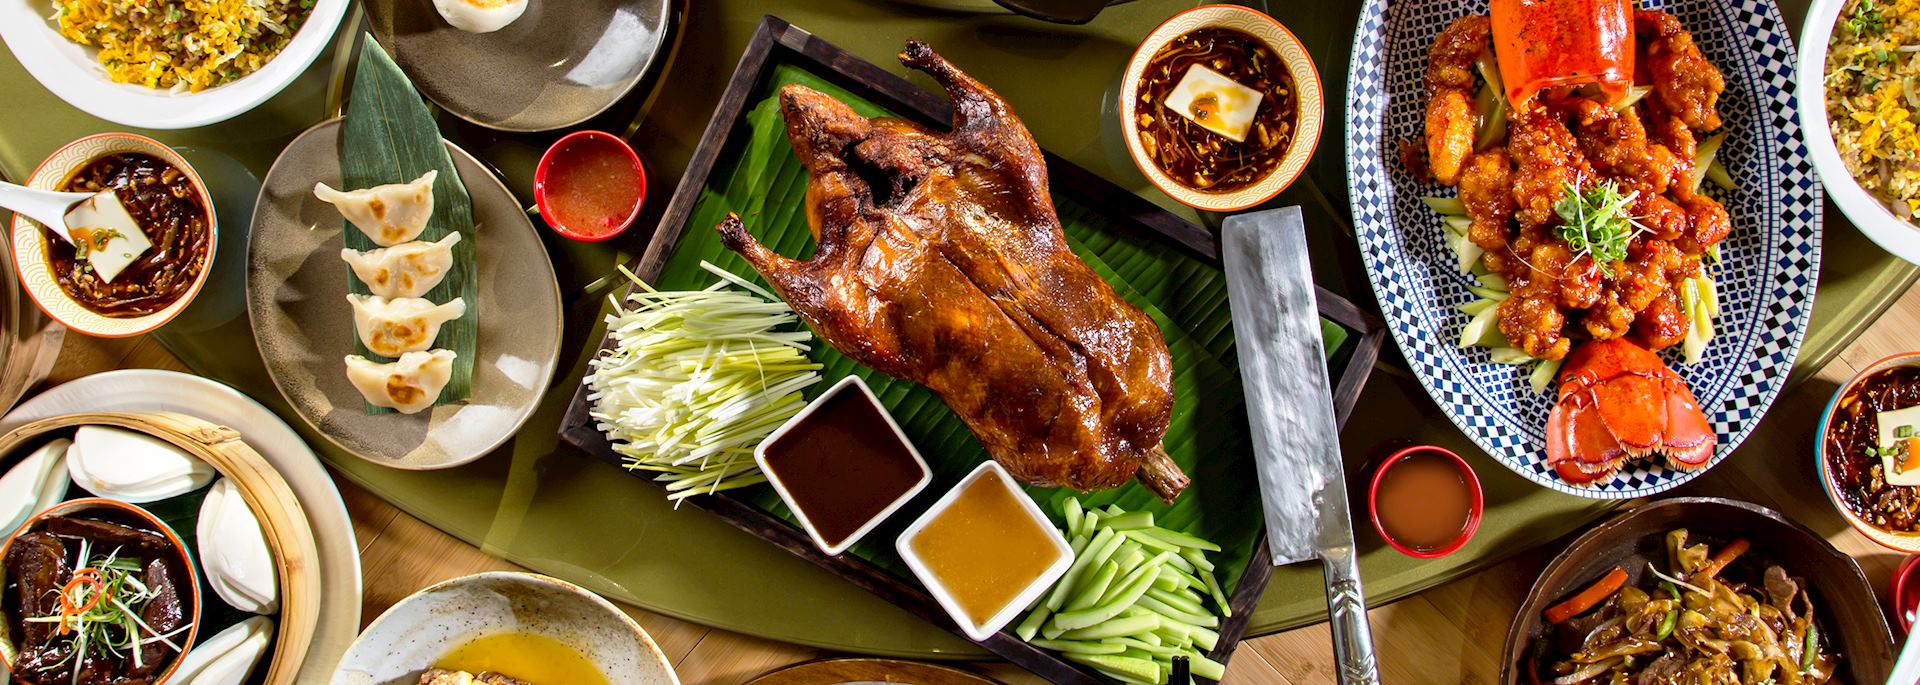 Chinese cuisine — Peking duck